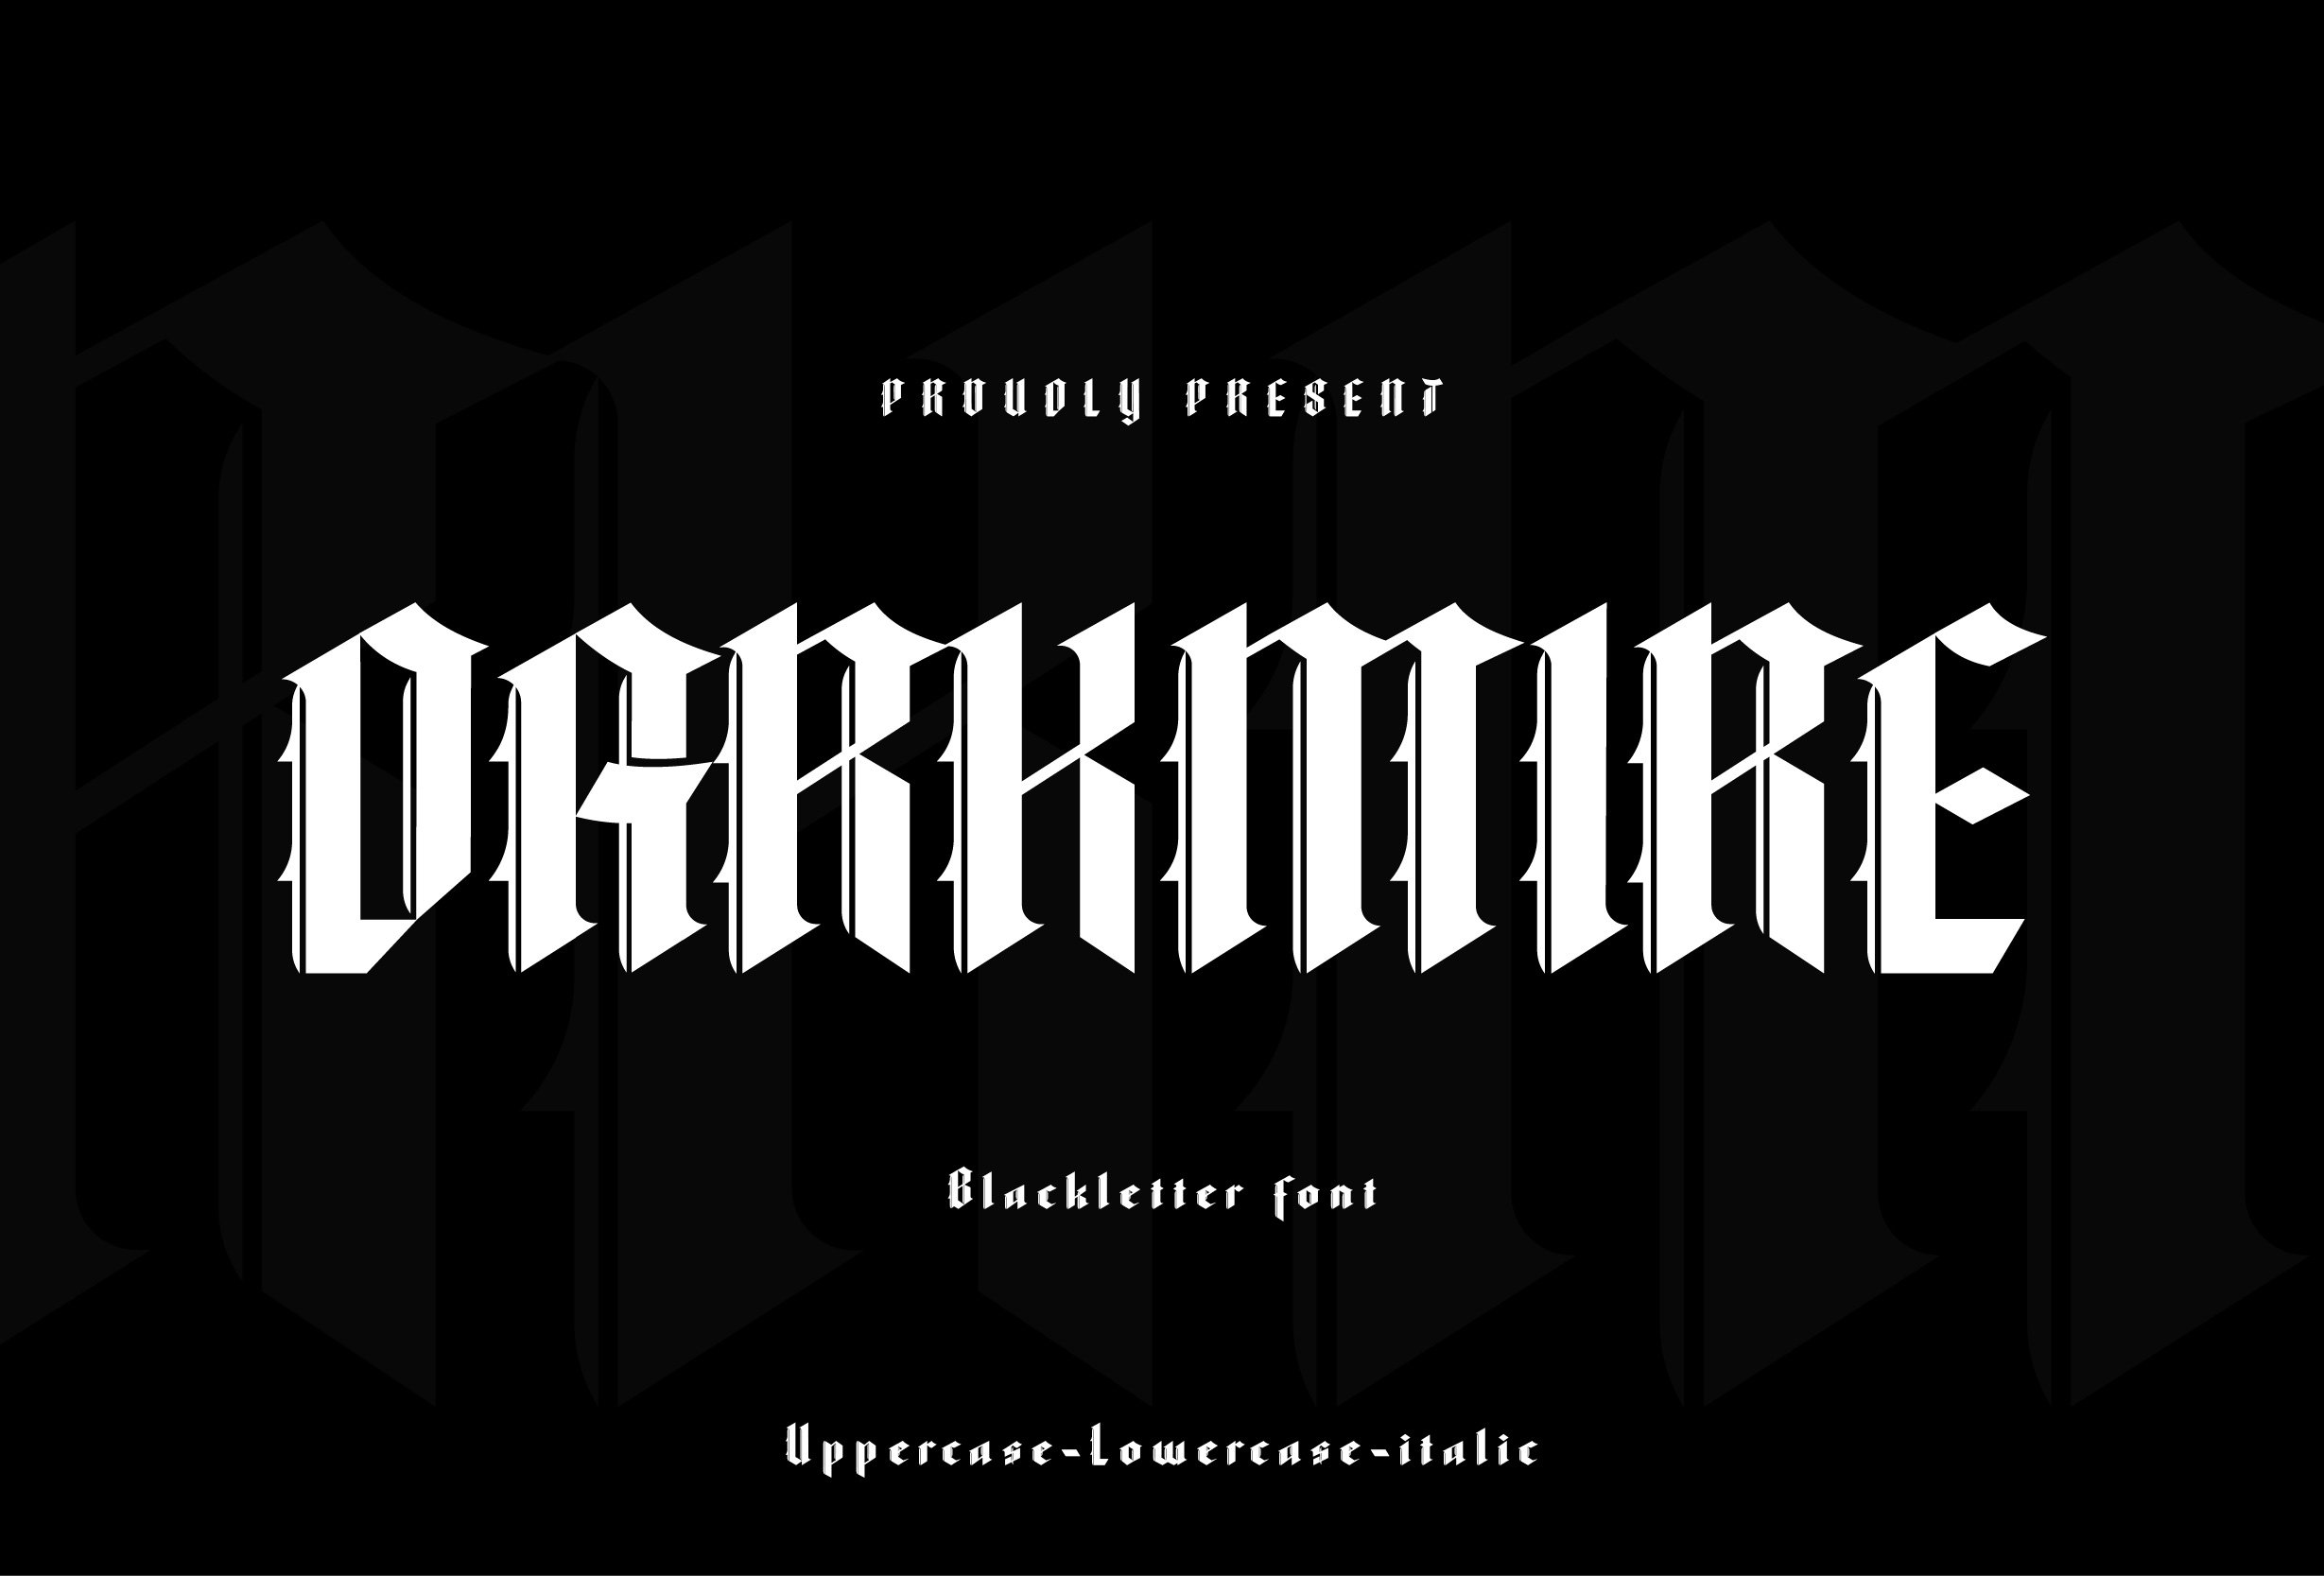 Darkmire - Blacklletter font cover image.